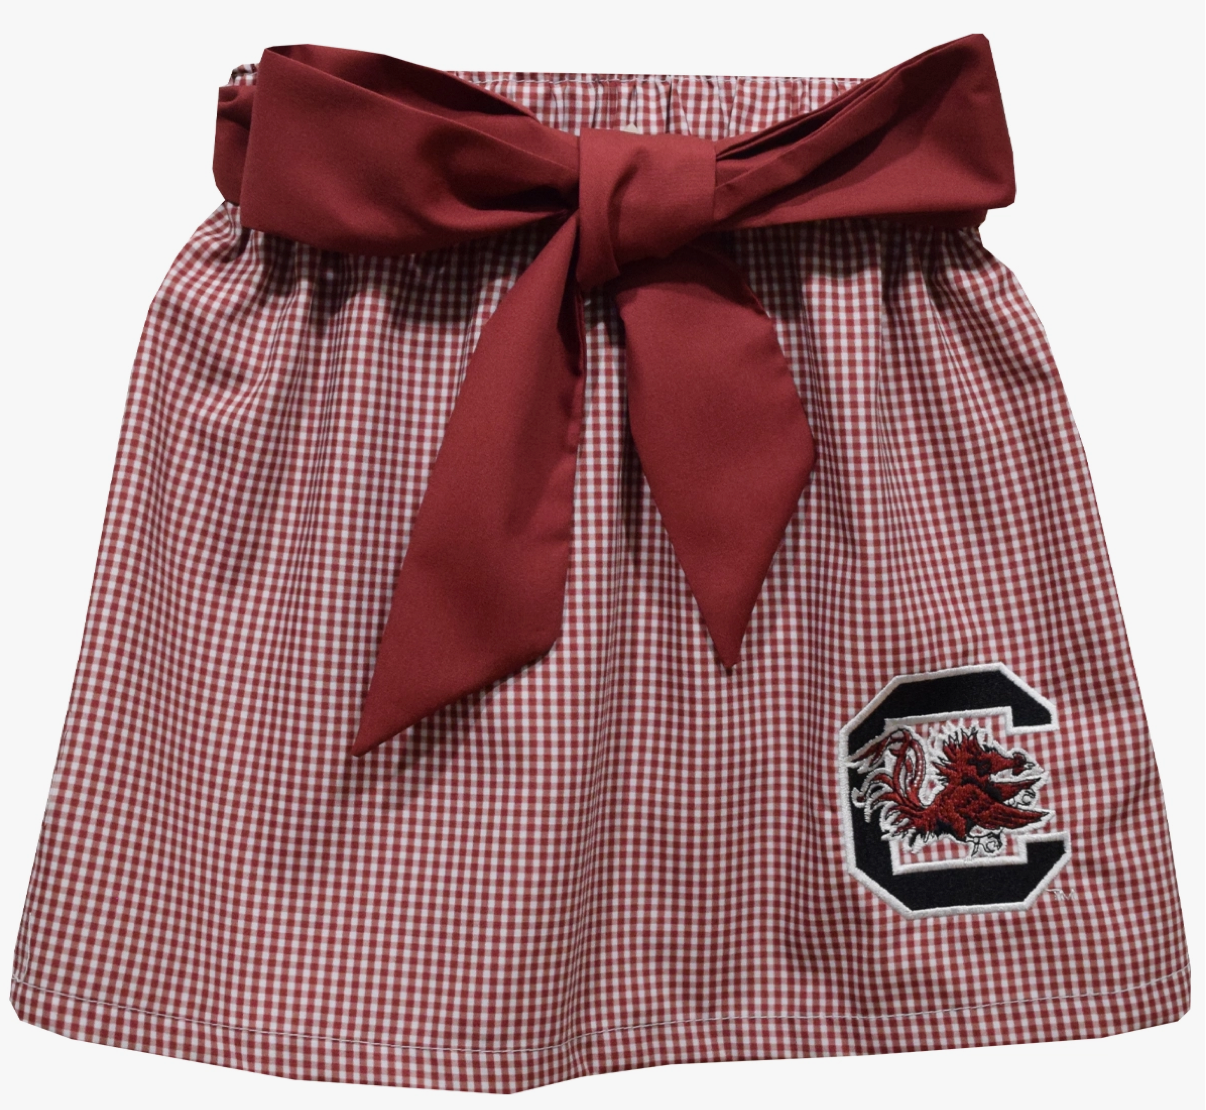 South Carolina Gamecocks Embroidered Gingham Skirt with Sash